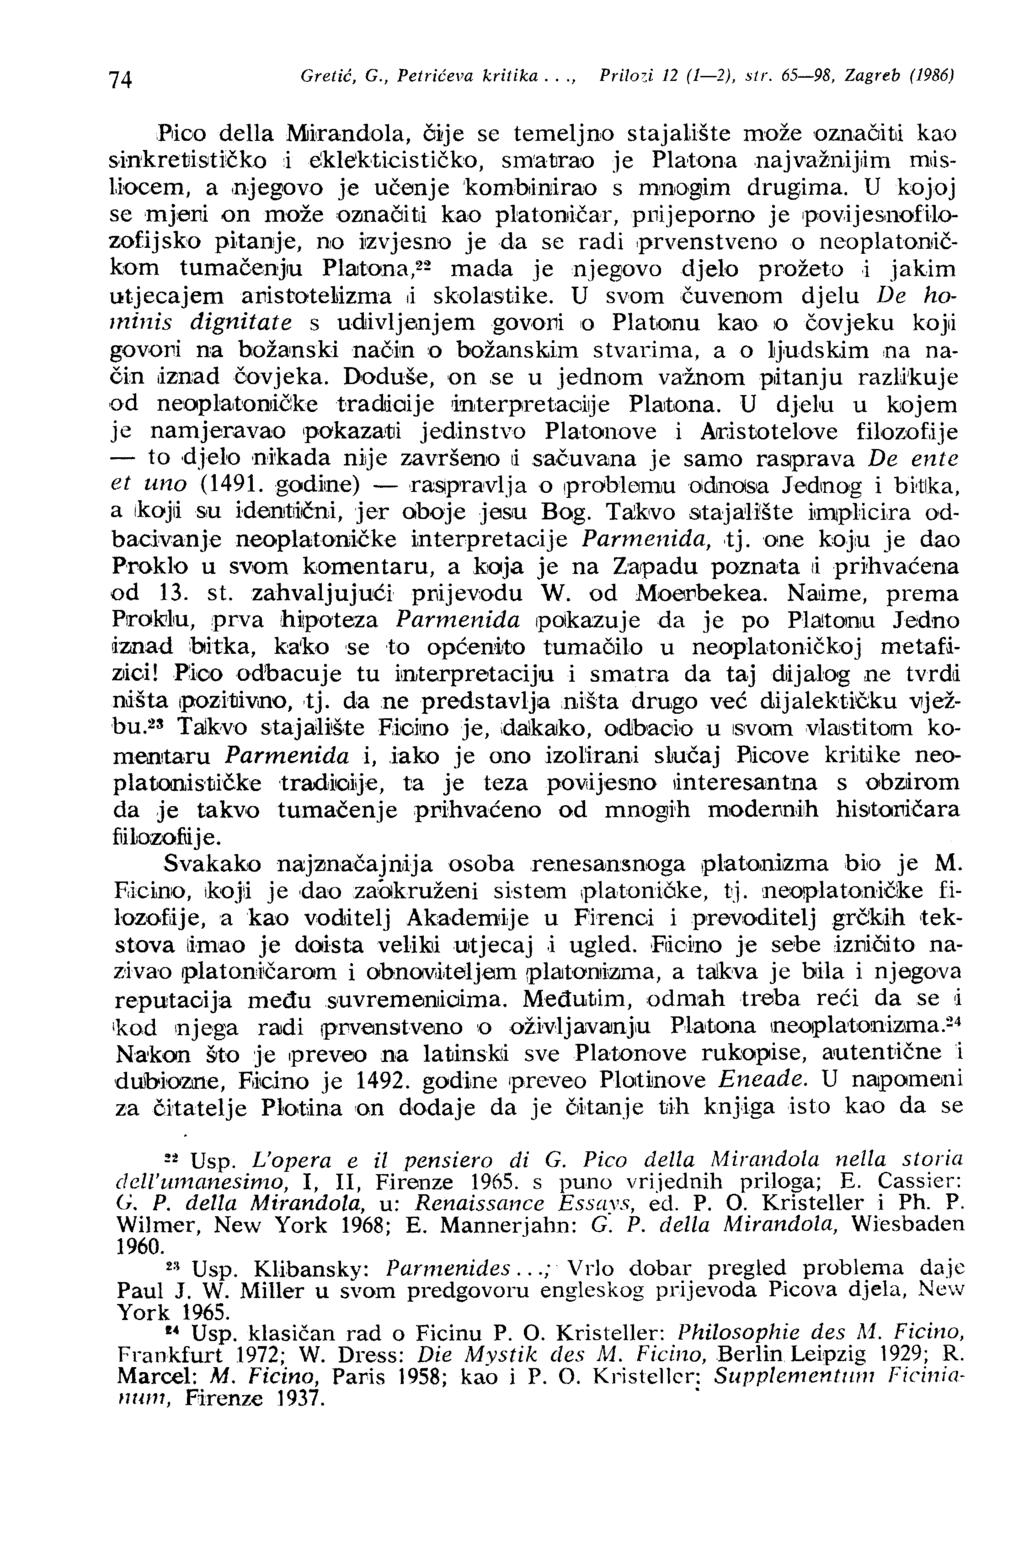 74 Gretić, G., Petrićeva kritika..., Prilo~i 12 (1-2), sir. 65-98, Zagreb (1986).Piko della Mkandola, č~je se temeljno stajal.ište može 'Označiti kao s inkretjističko iekle'k,ticističk'o, sm!